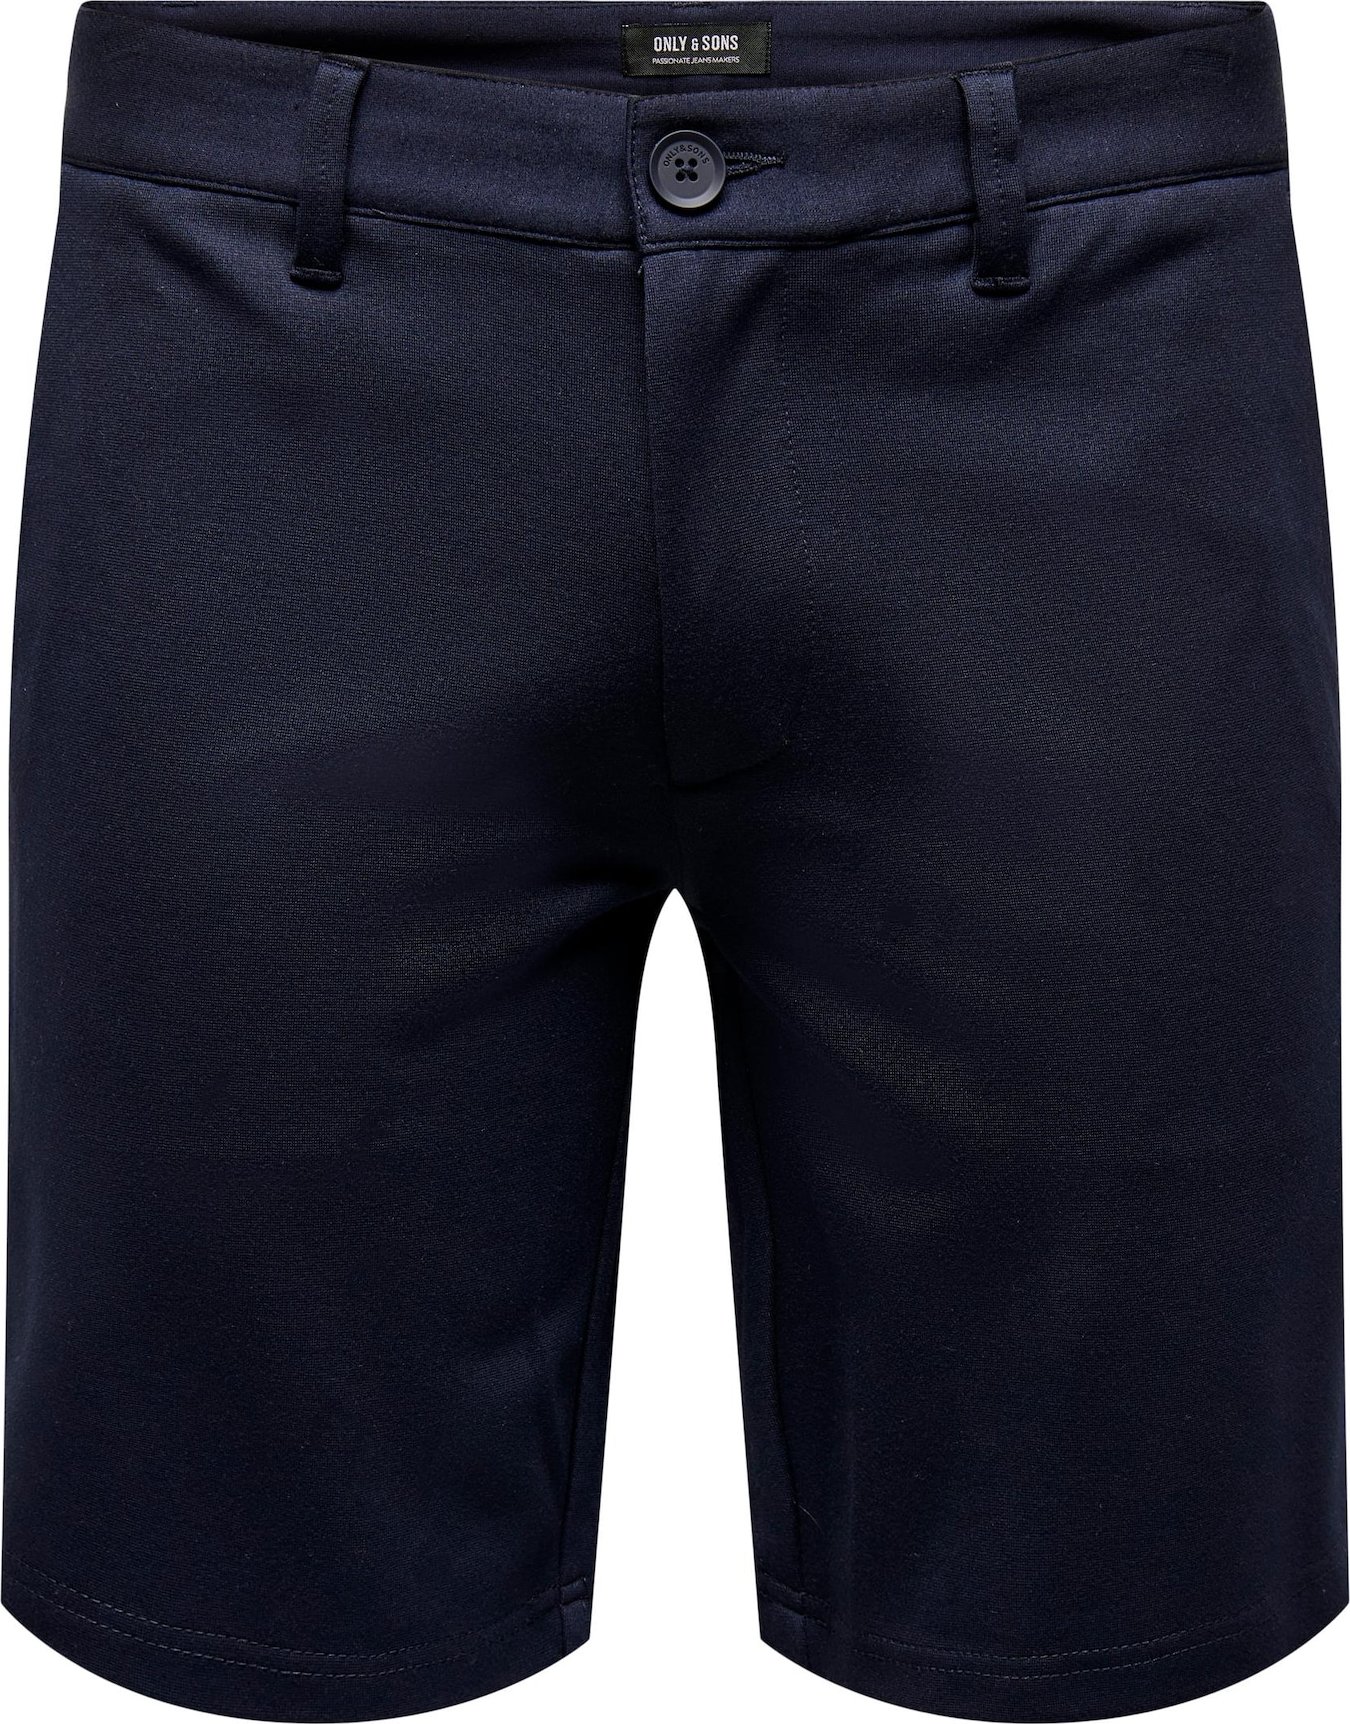 Kalhoty 'Mark' Only & Sons kobaltová modř